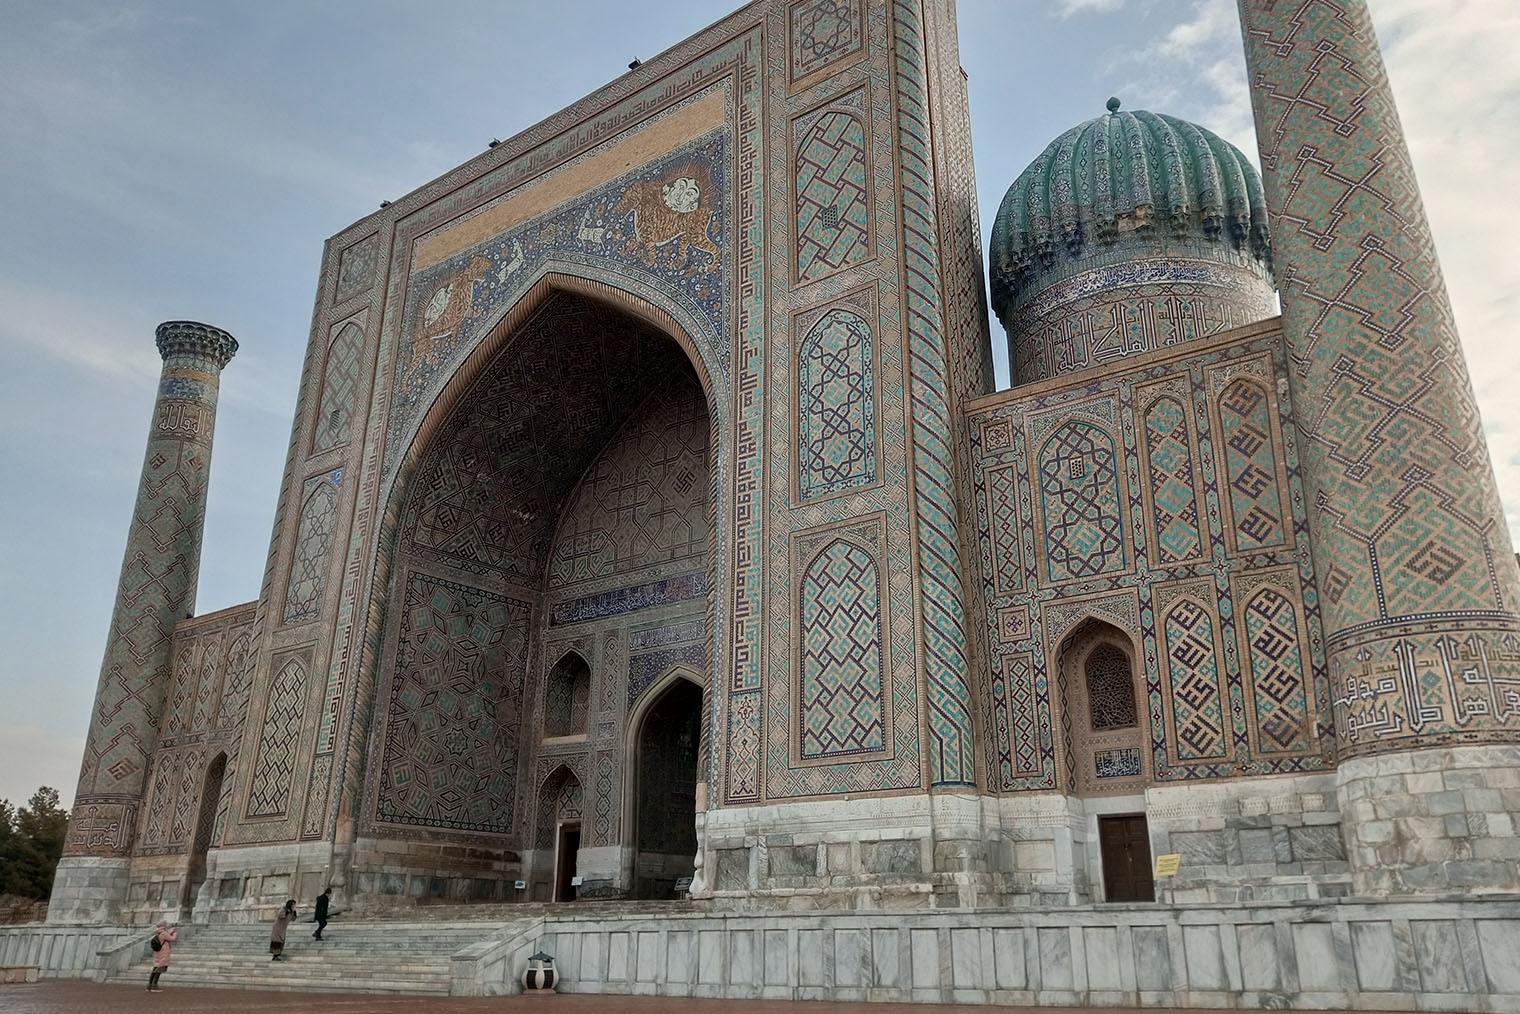 Достопримечательности в Узбекистане обычно богато украшены. На фото — узоры на фасаде медресе Шердор в Самарканде